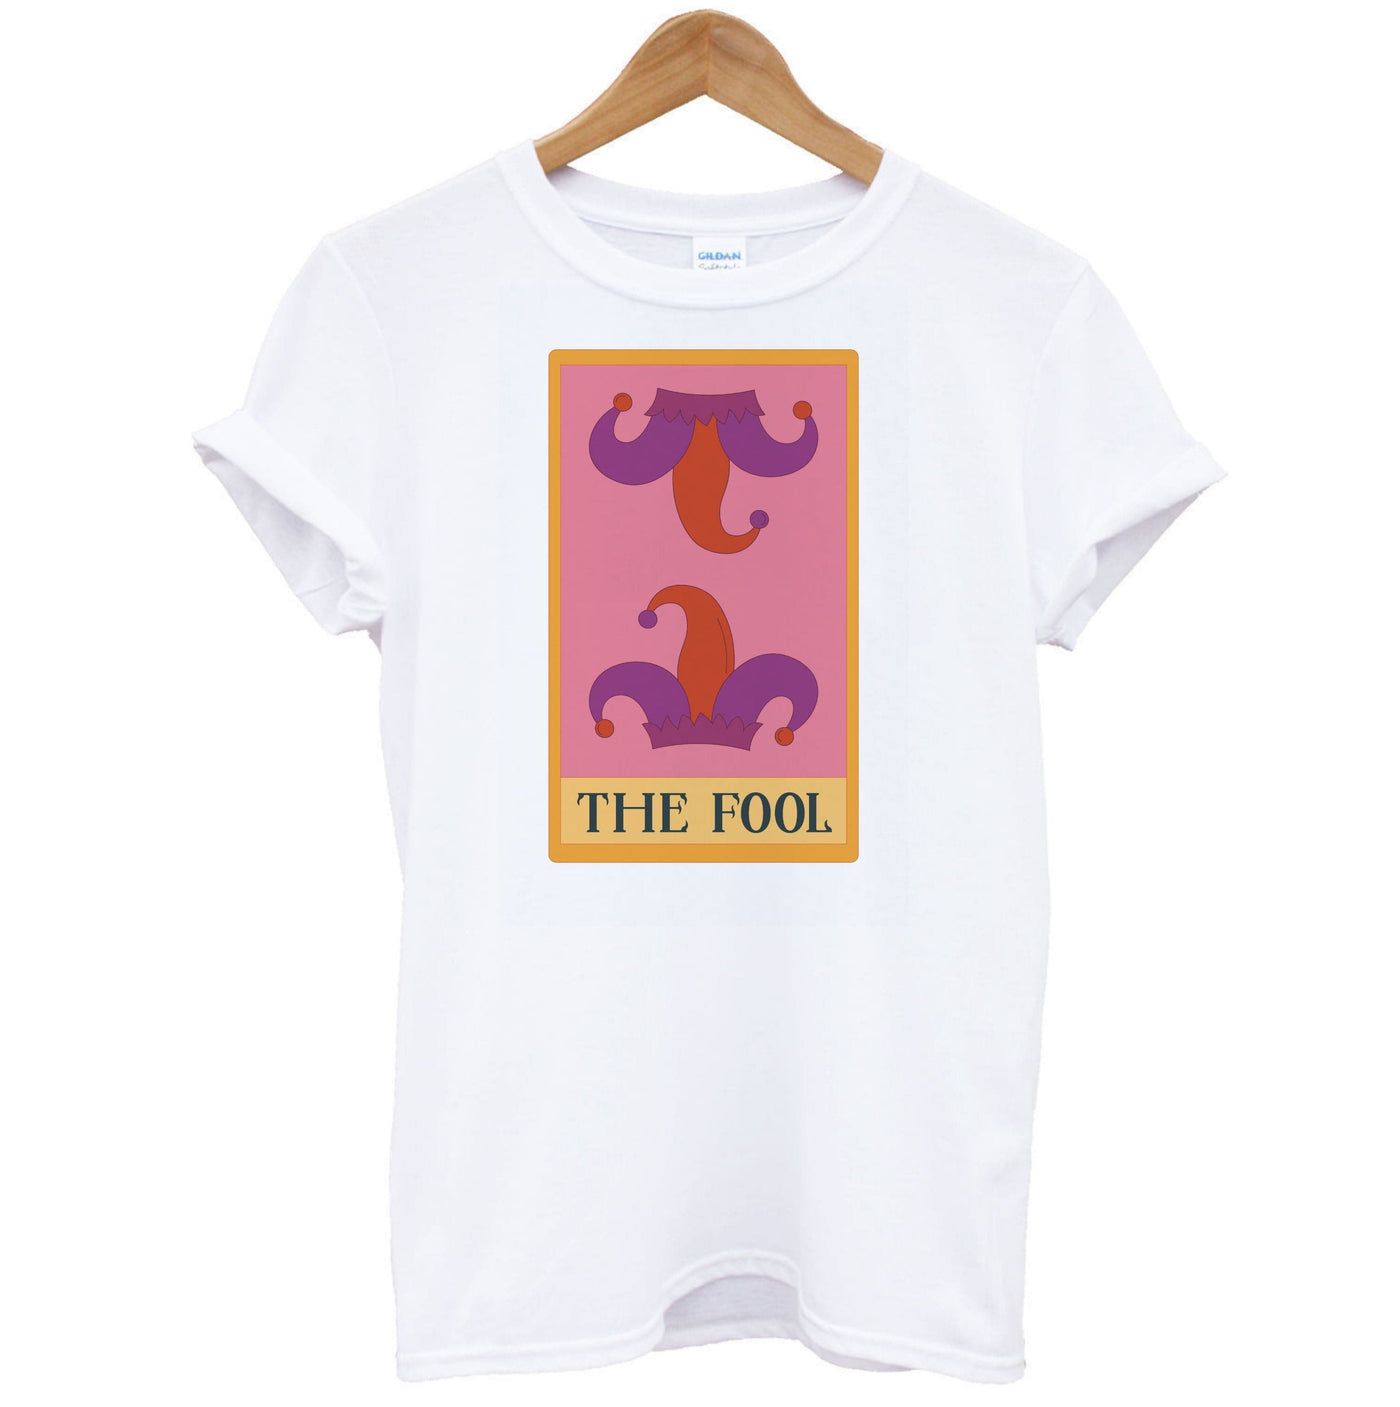 The Fool - Tarot Cards T-Shirt